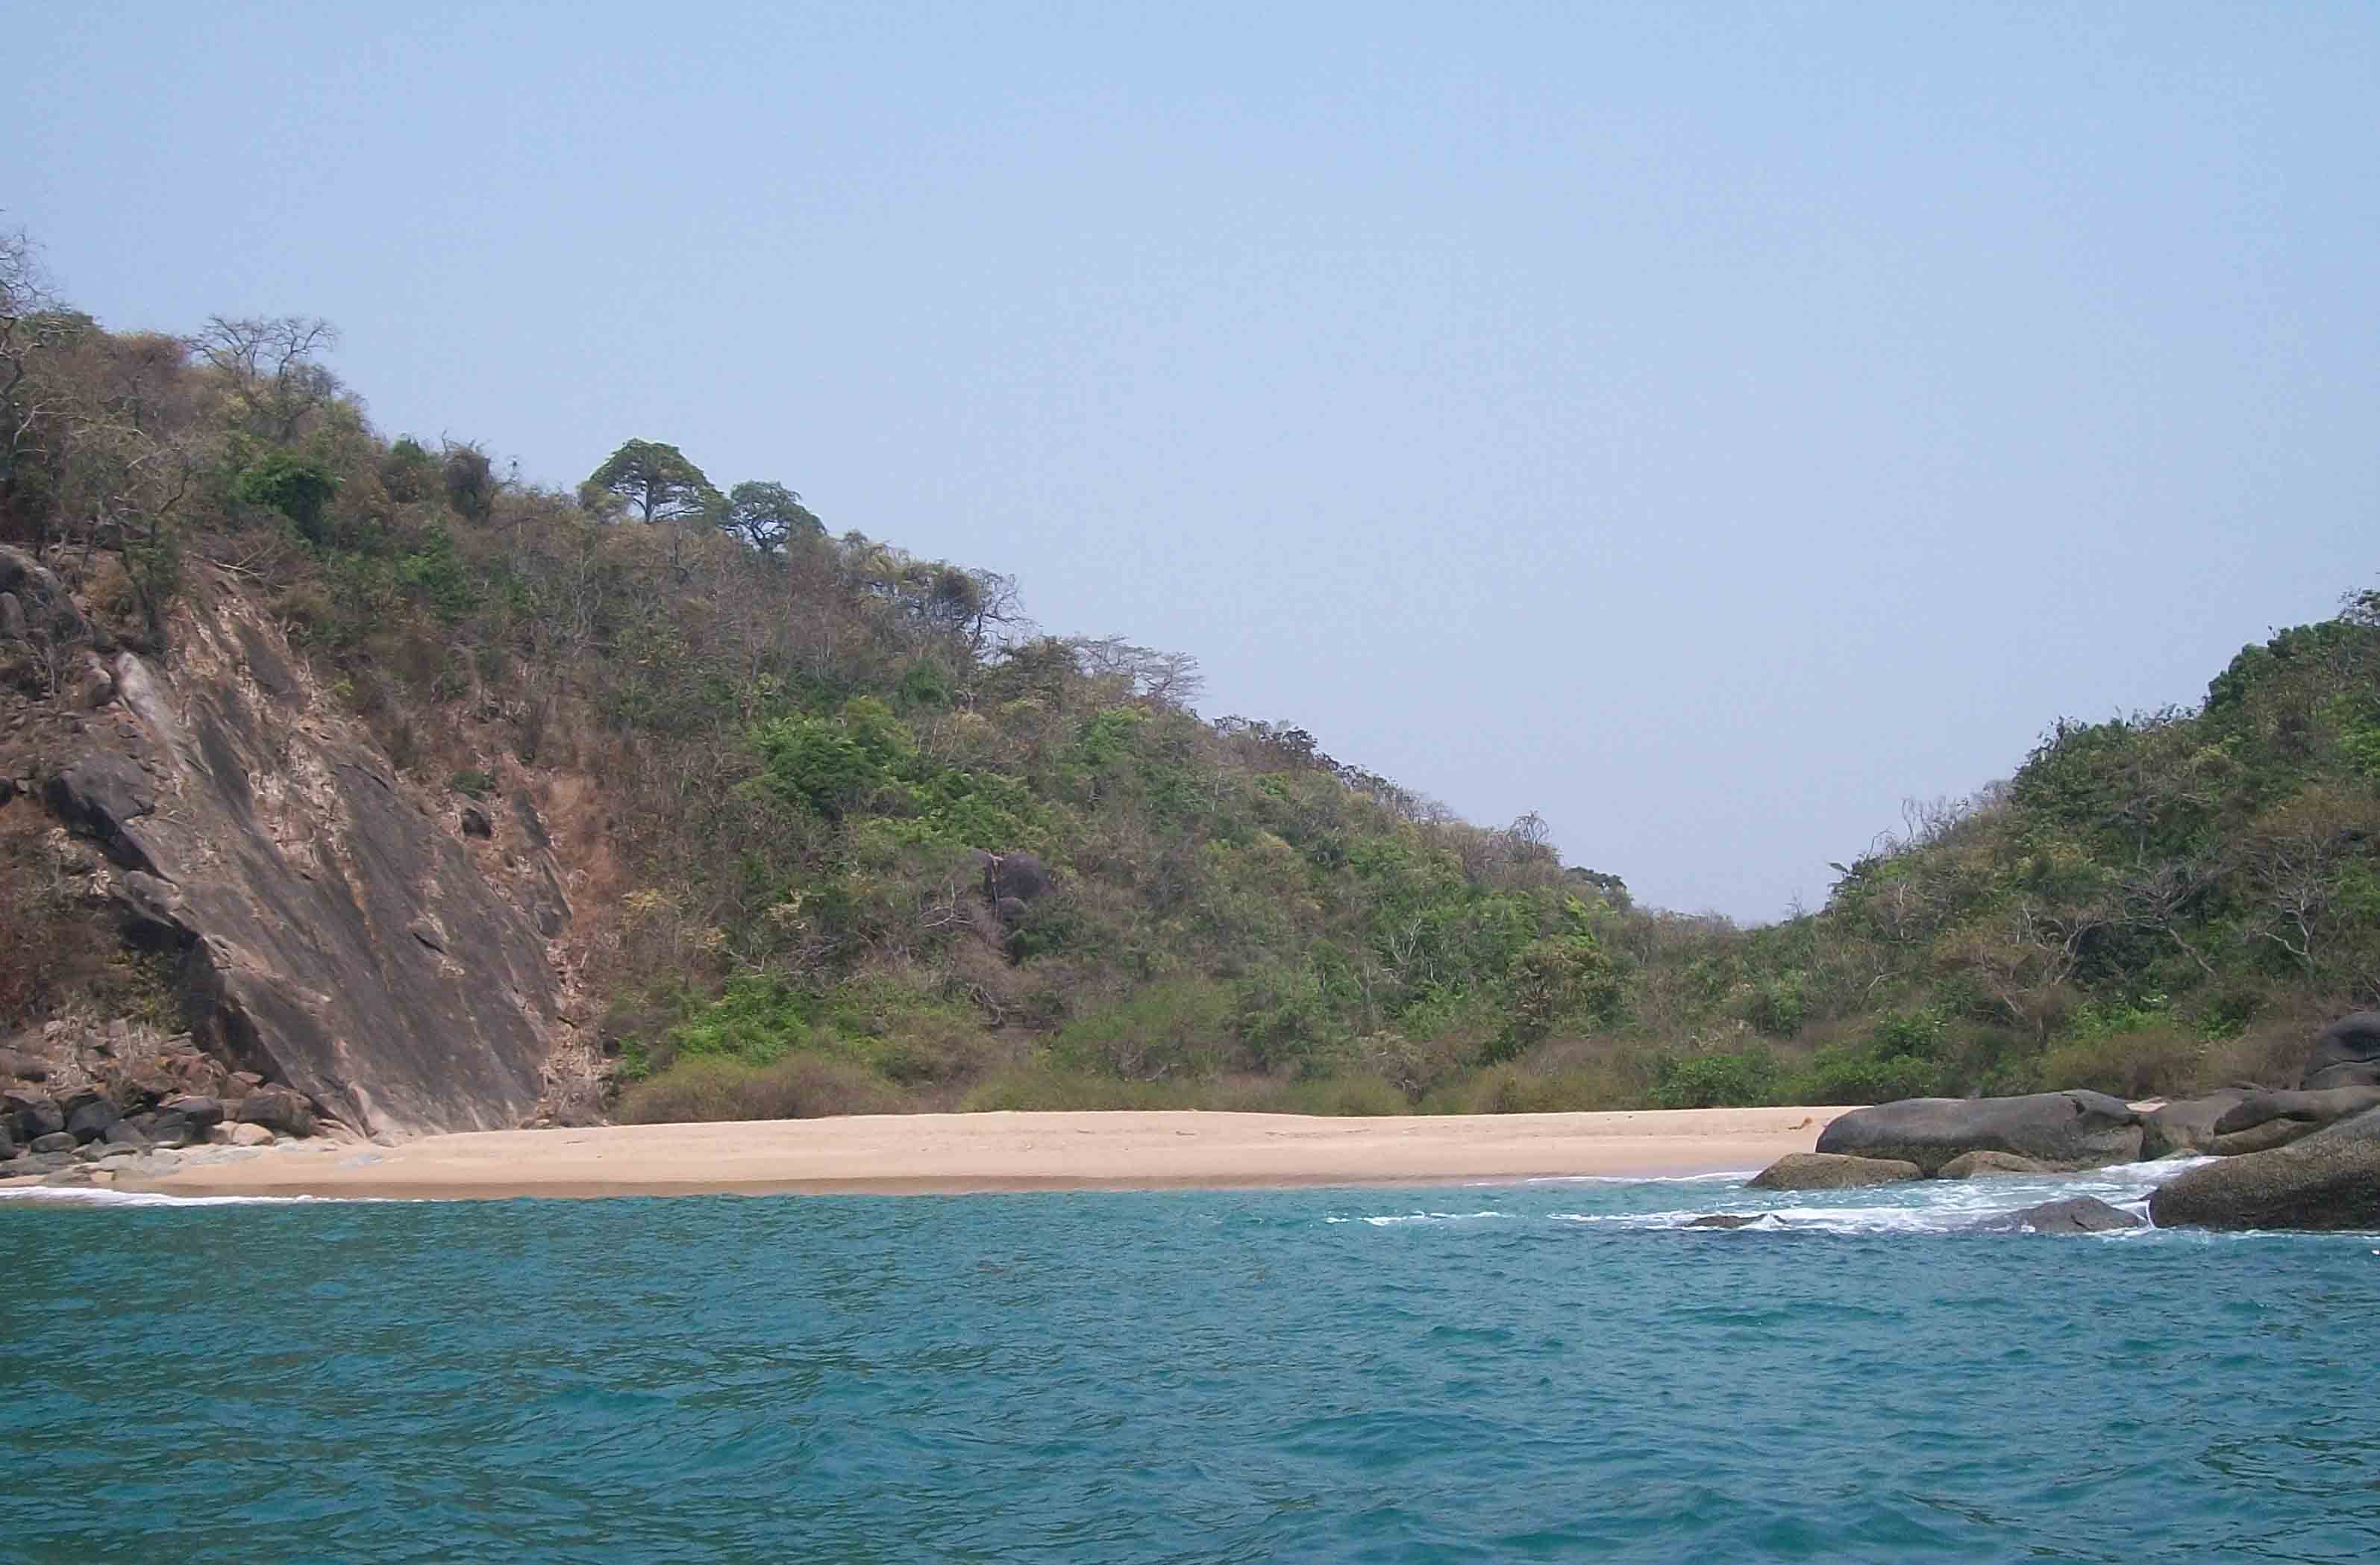 Butterfly Beach is a hidden beach in Goa